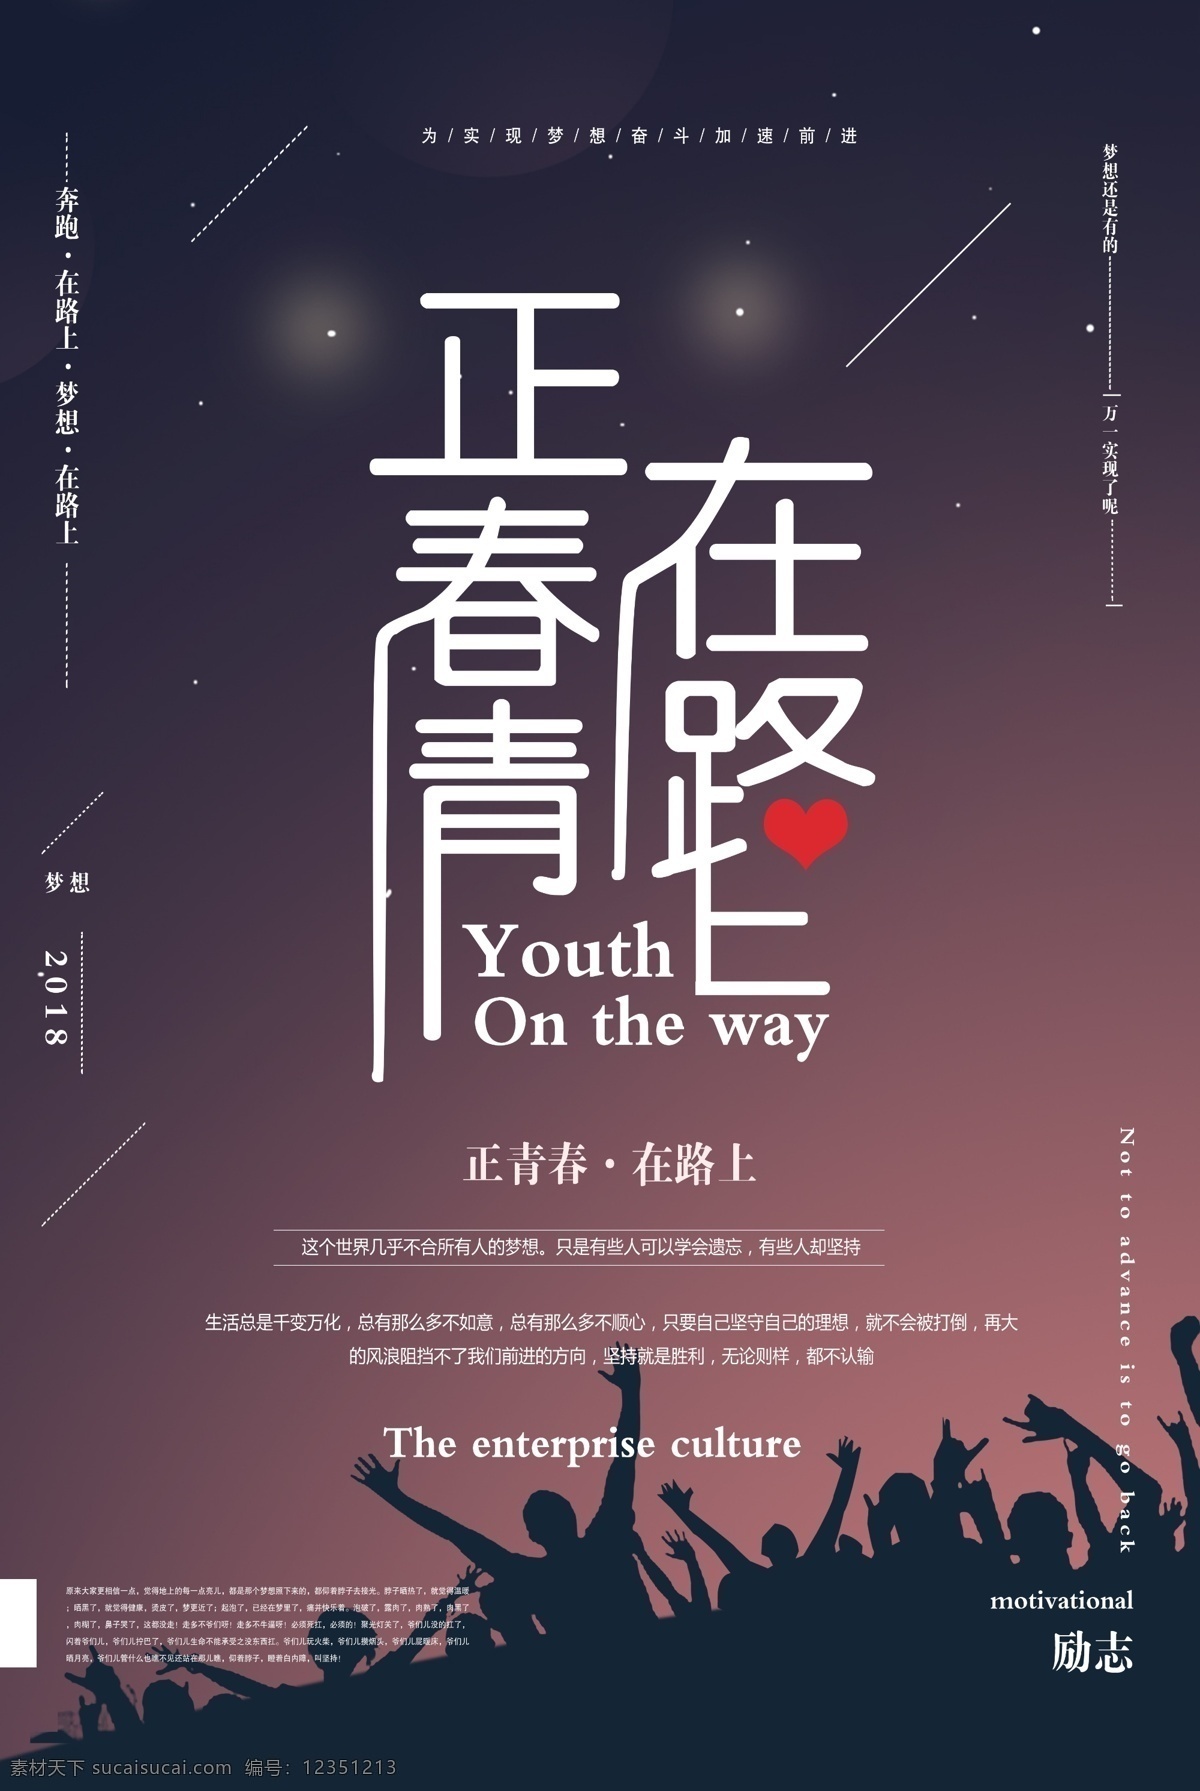 正青春在路上 海报 商业 宣传 正能量 励志 青春 早安 晚安 鸡汤 文案 正能量早晚安